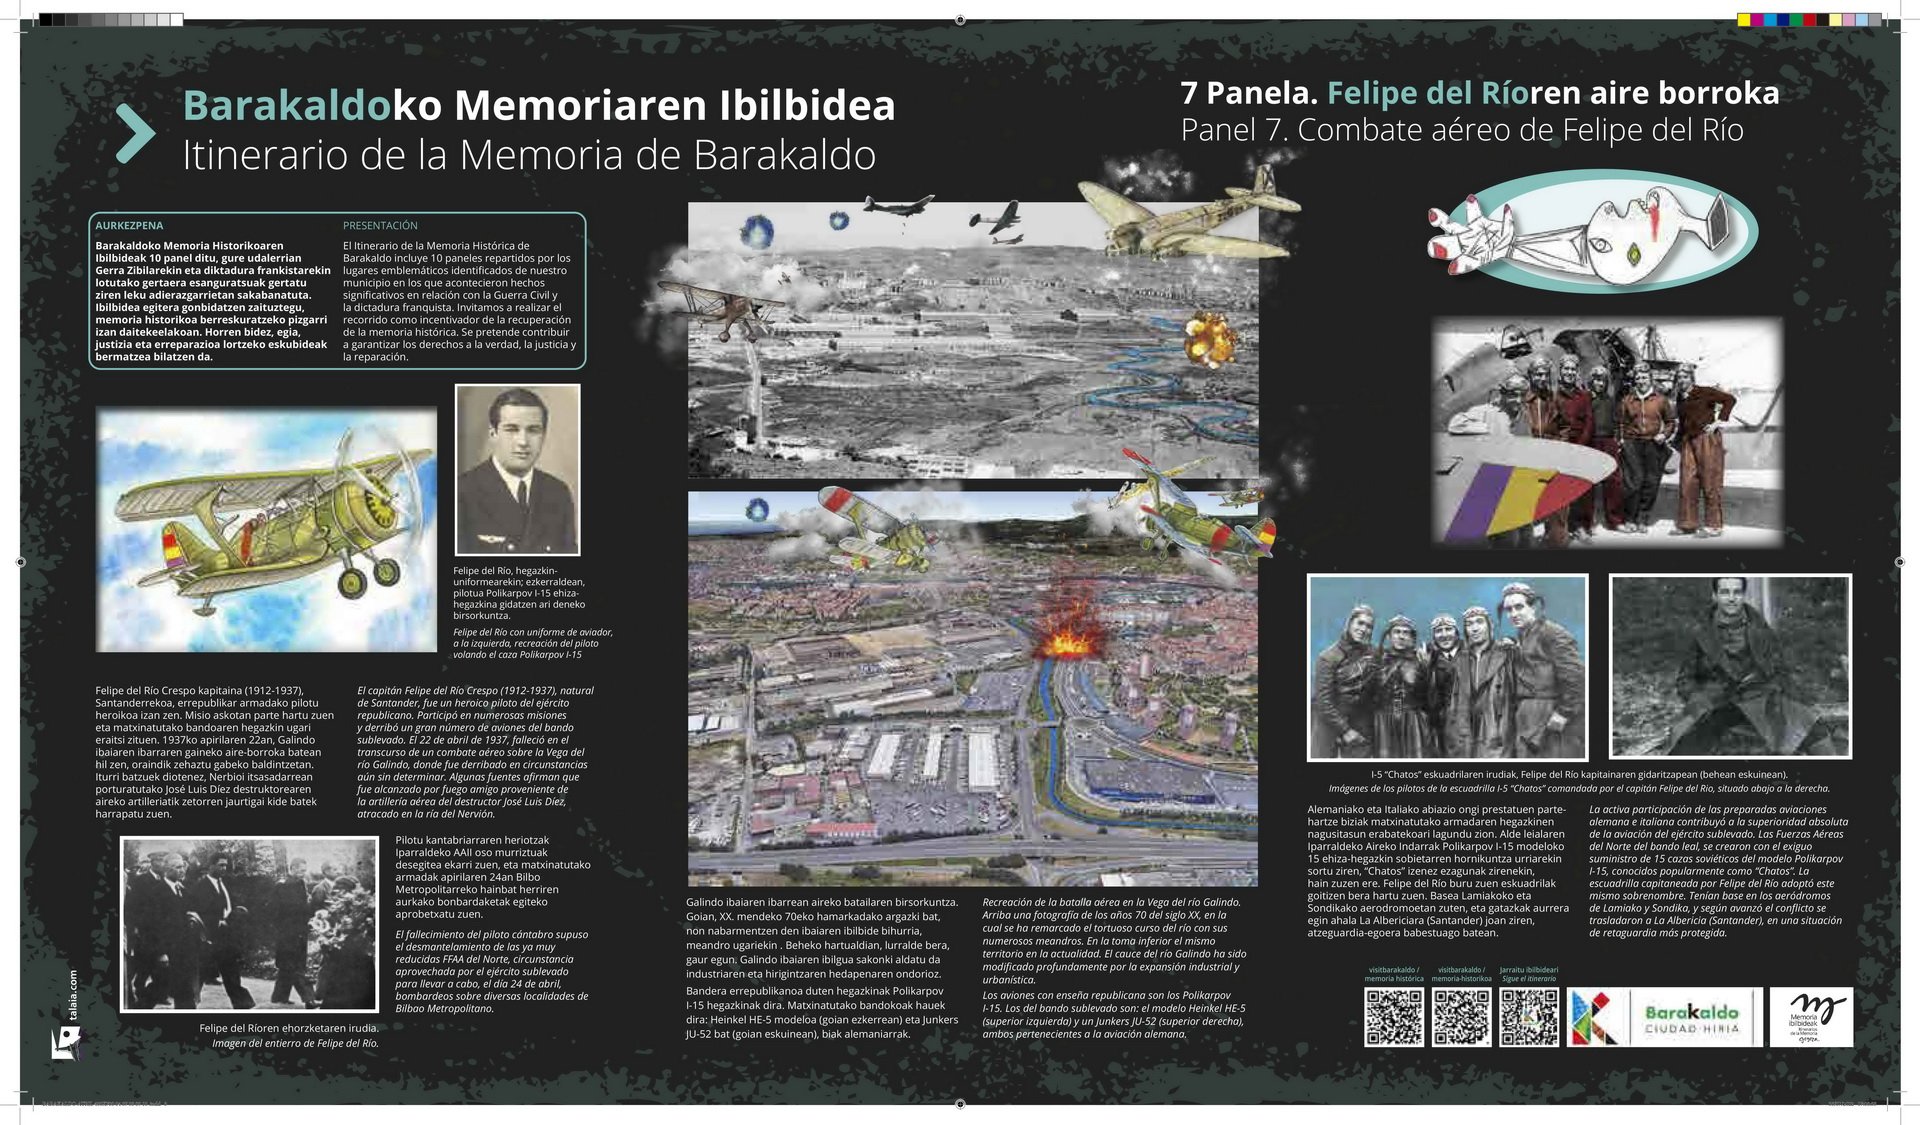 Ayuntamiento de Barakaldo. Guerra Civil. Itinerario de la Memoria Histórica